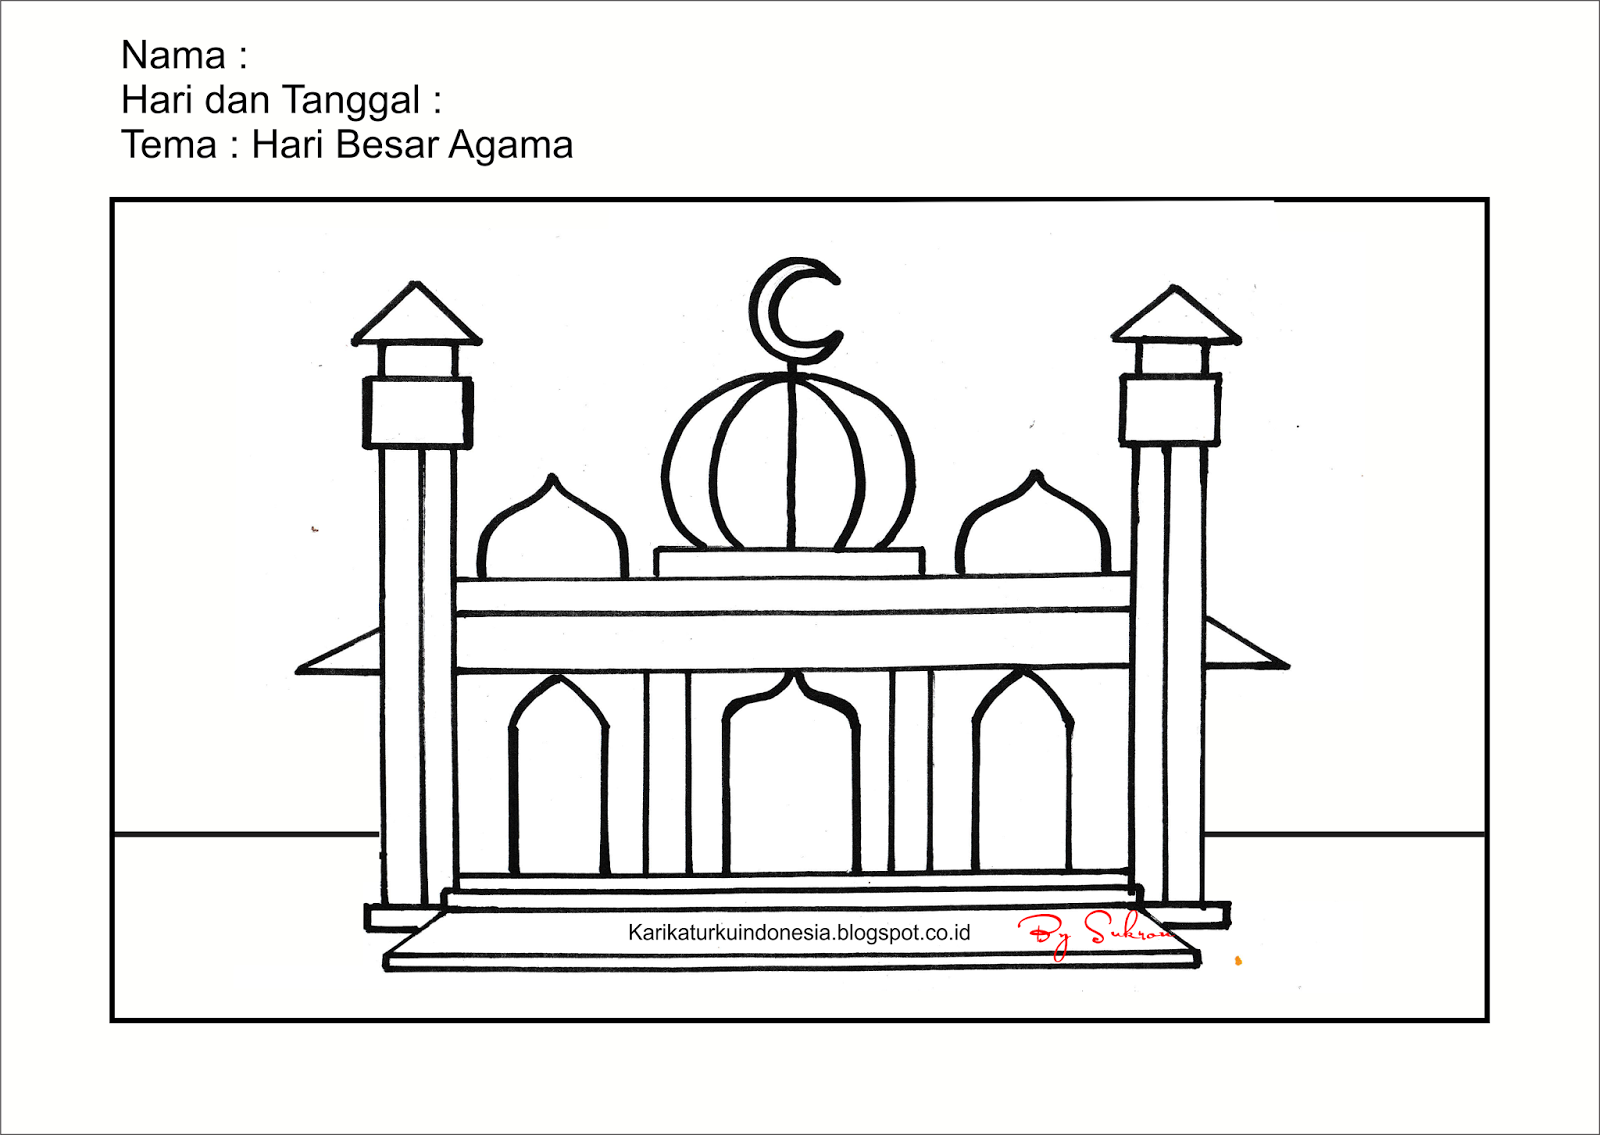 Karikaturku Indonesia: Flash Card ( Masjid )